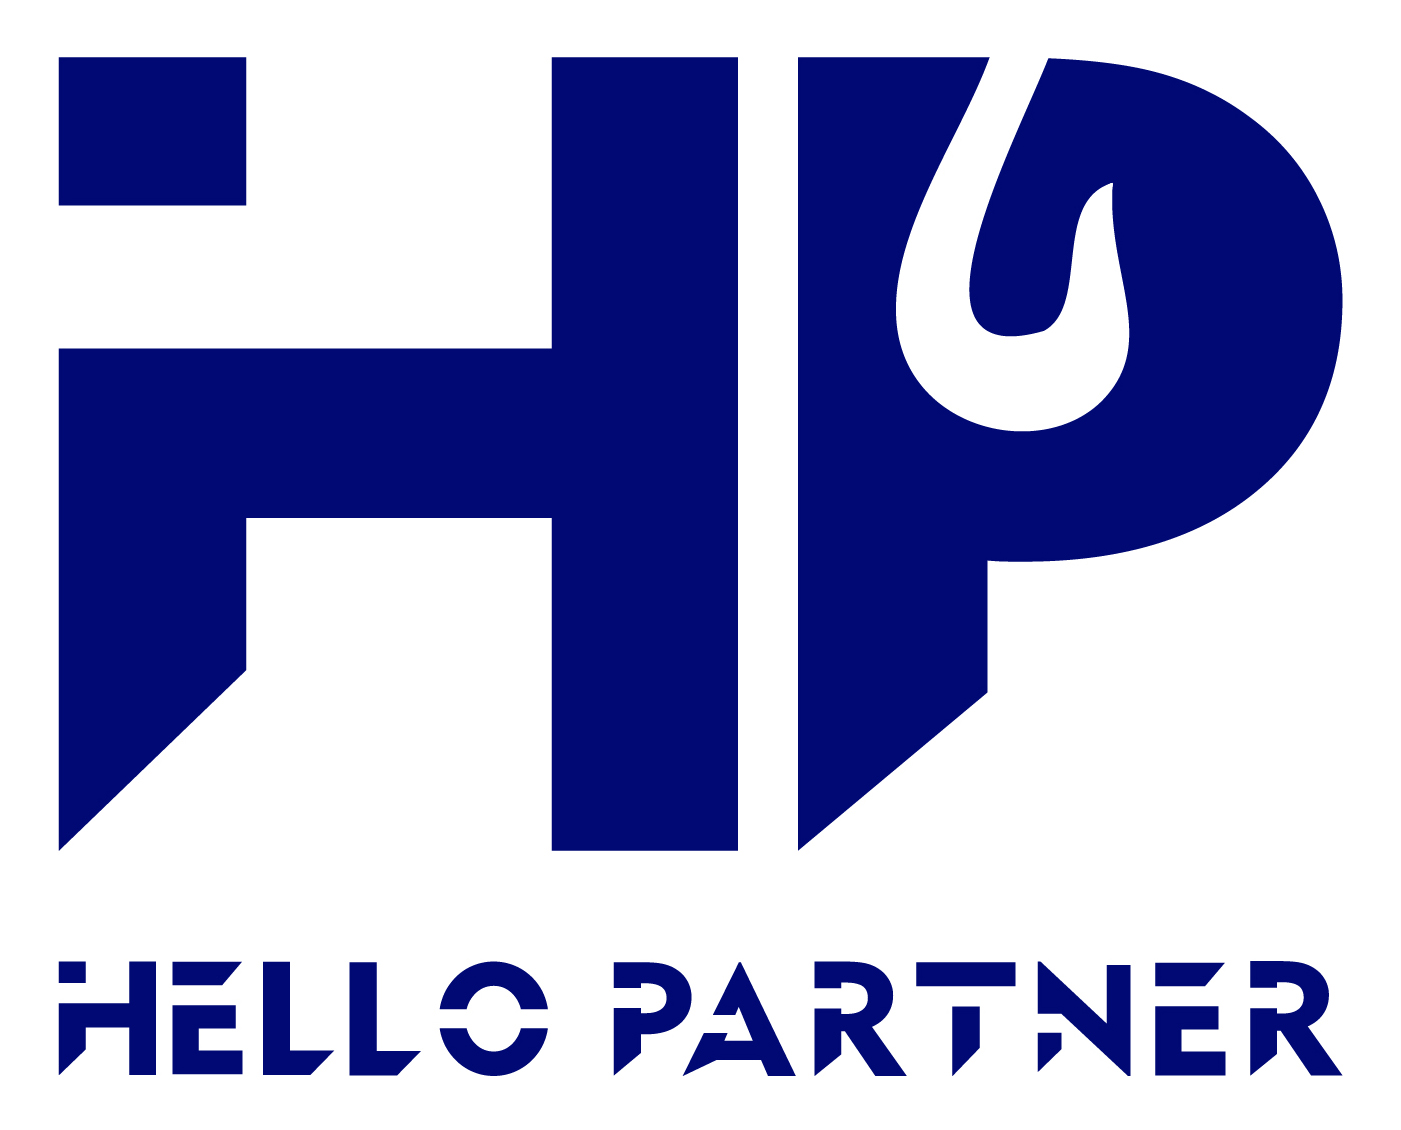 Hellopartner logo 4-v2